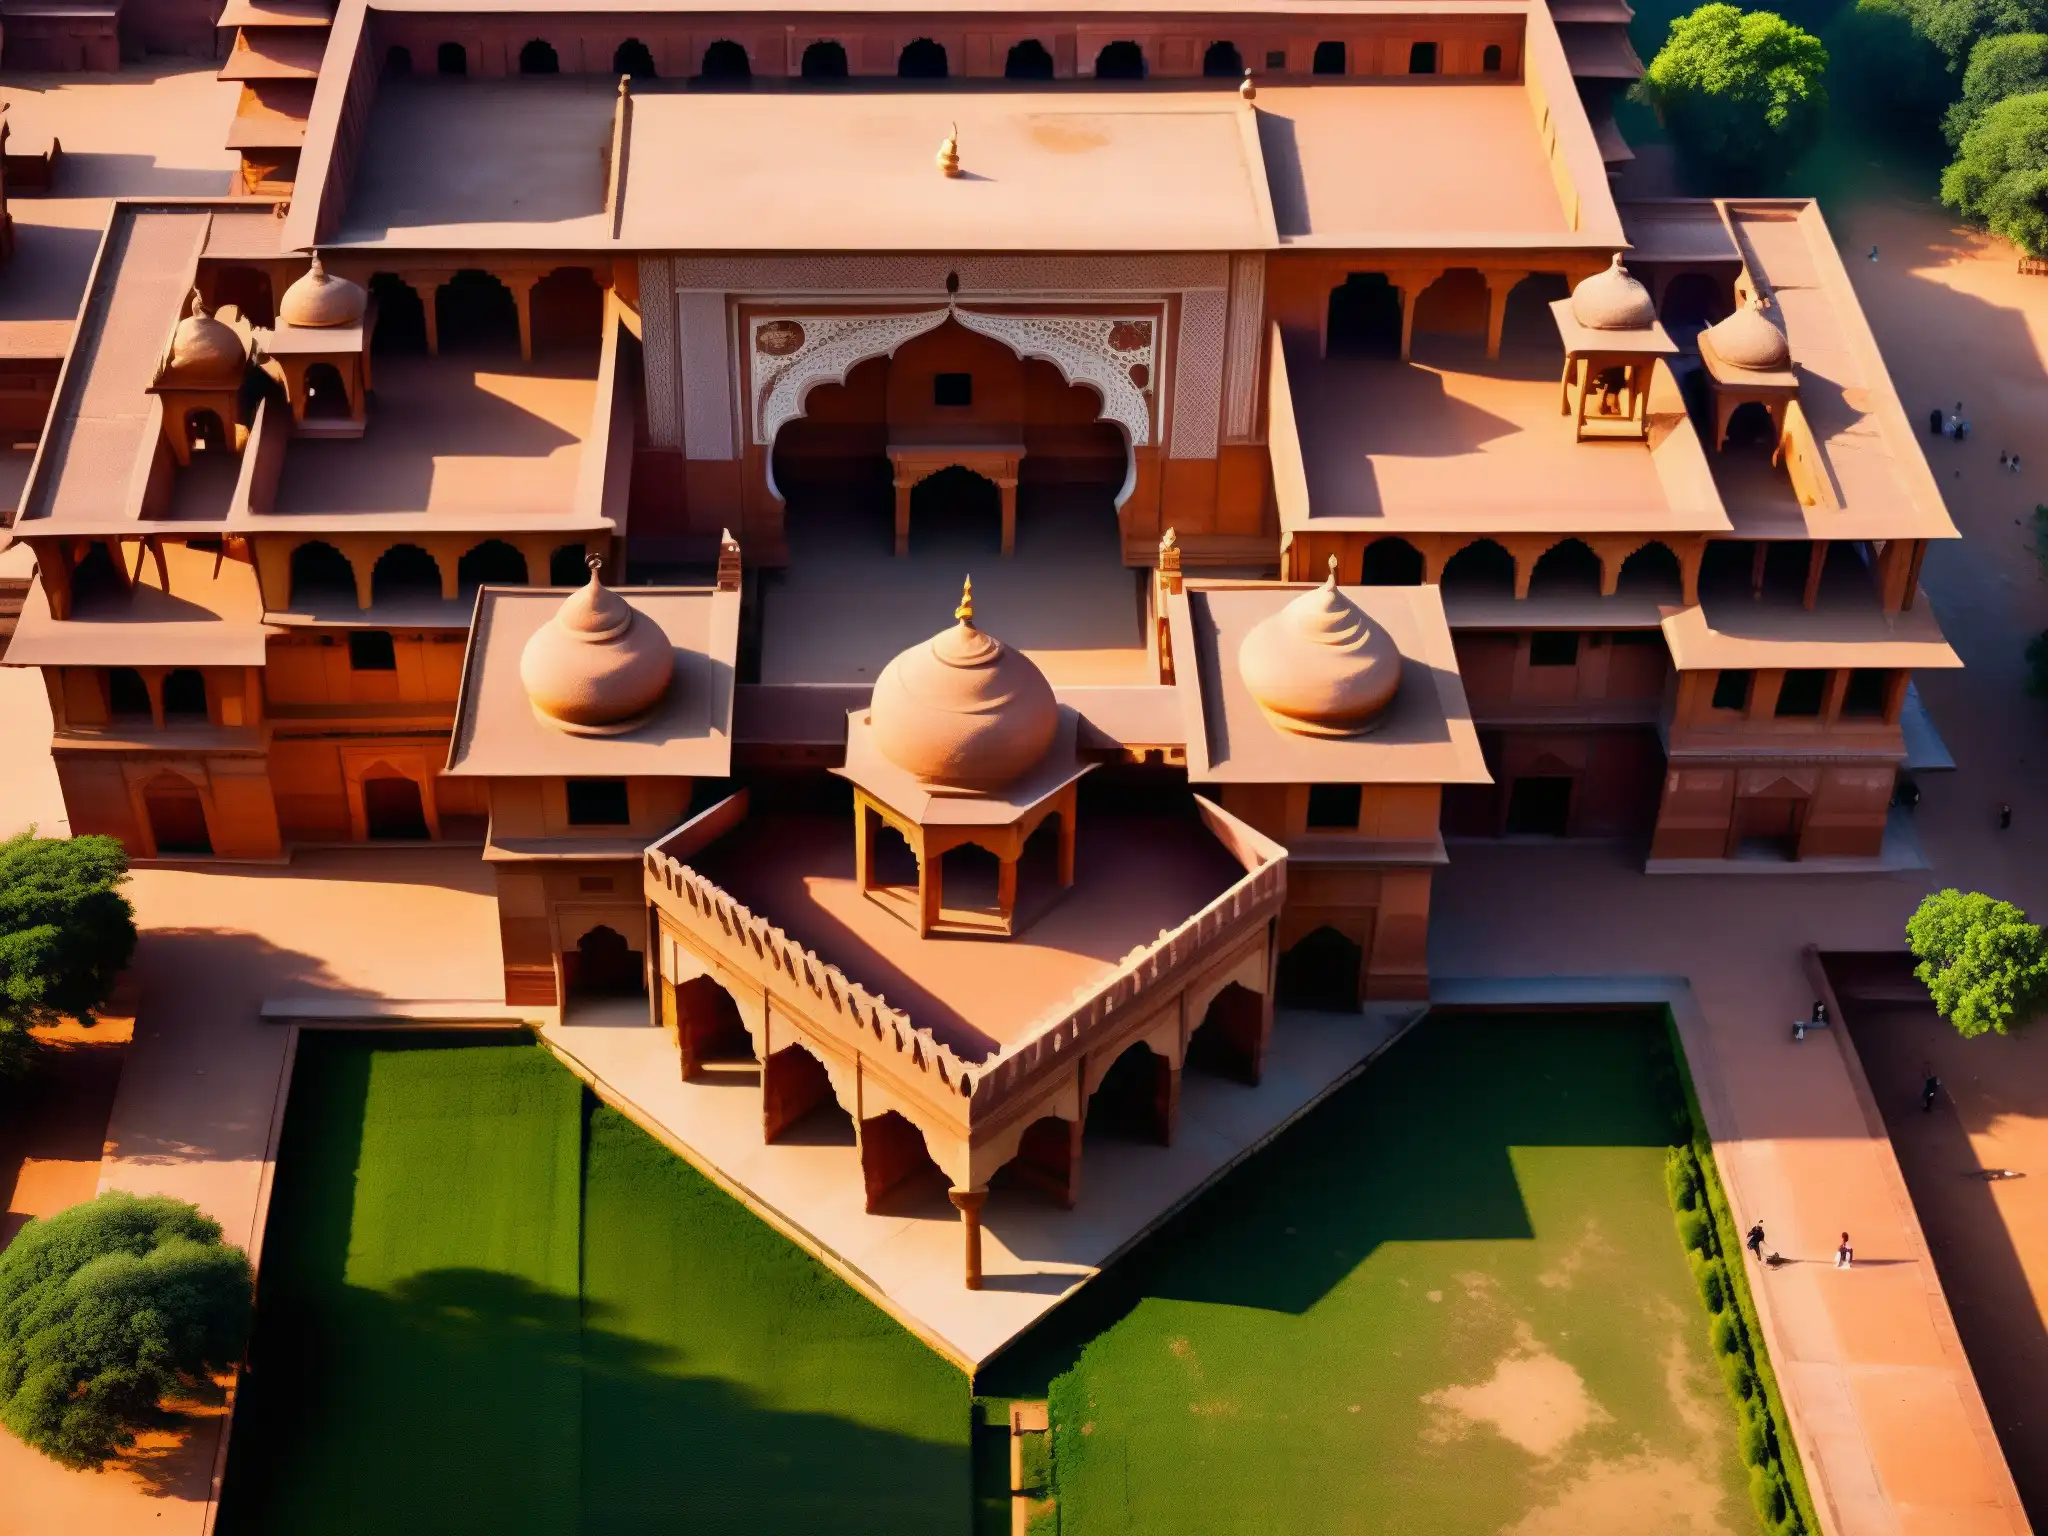 Vista aérea detallada de Fatehpur Sikri en la luz dorada, mostrando el origen y misterio de la Puerta de la Muerte